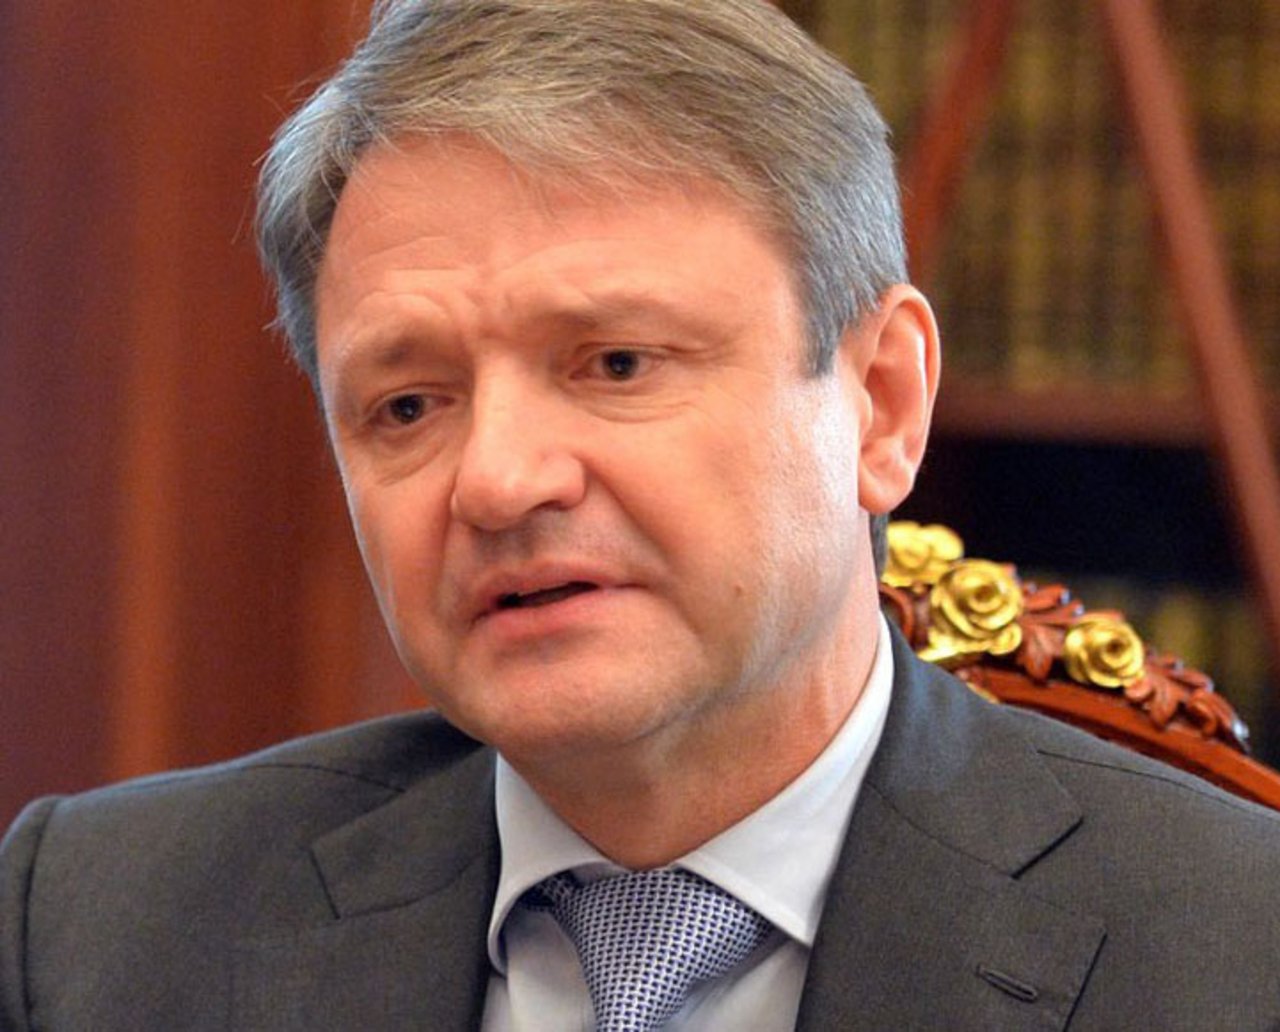 Alexander Nikolajewitsch Tkatschow ist der russische Landwirtschaftsminister. (Bild kremlin.ru)